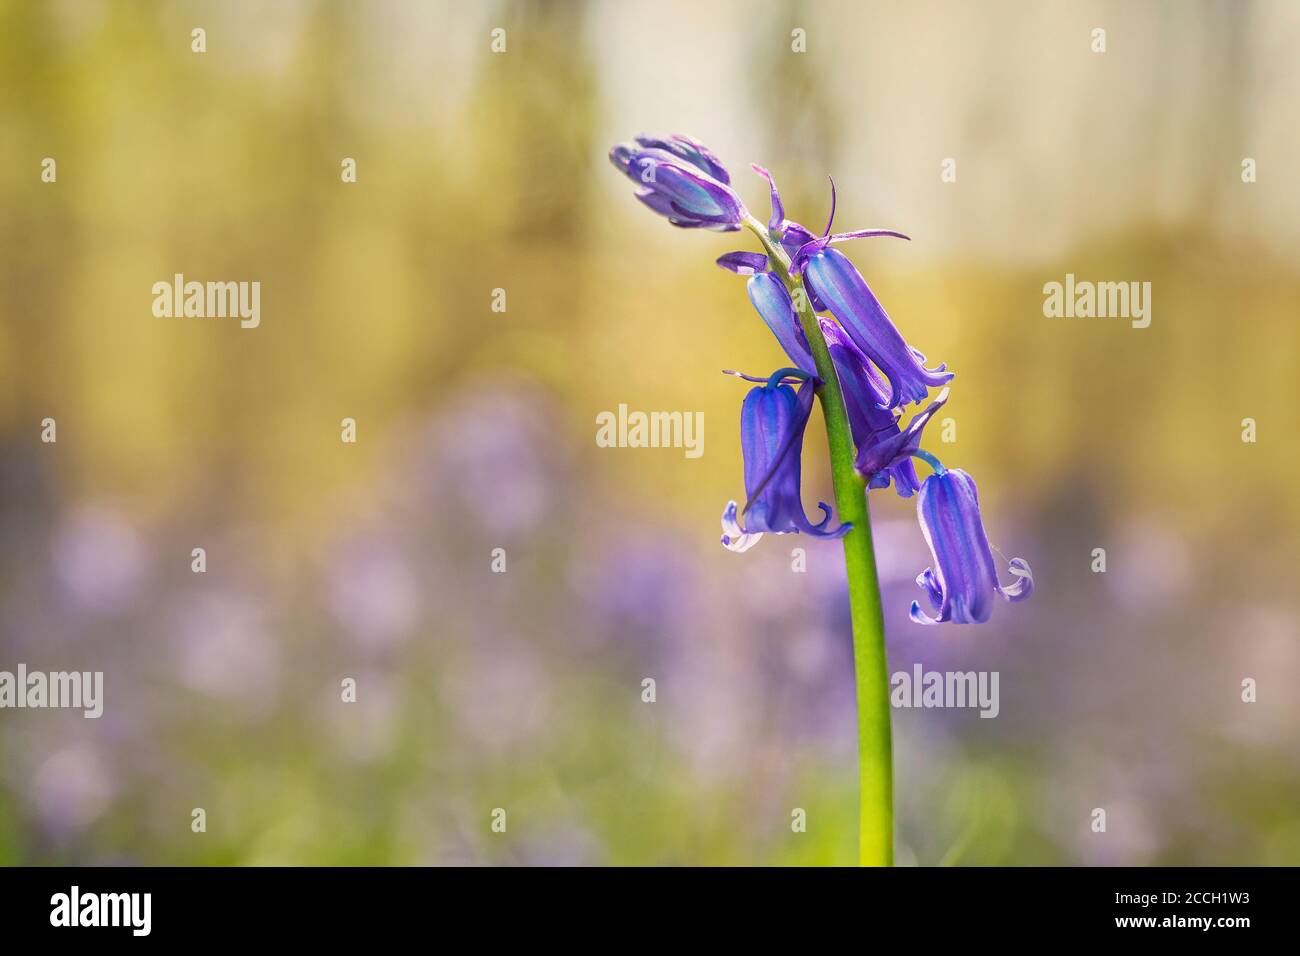 Violeta-azul; común Bluebell, Bluebell, Hyacintoides no scripta flor con un fondo bokeh Foto de stock